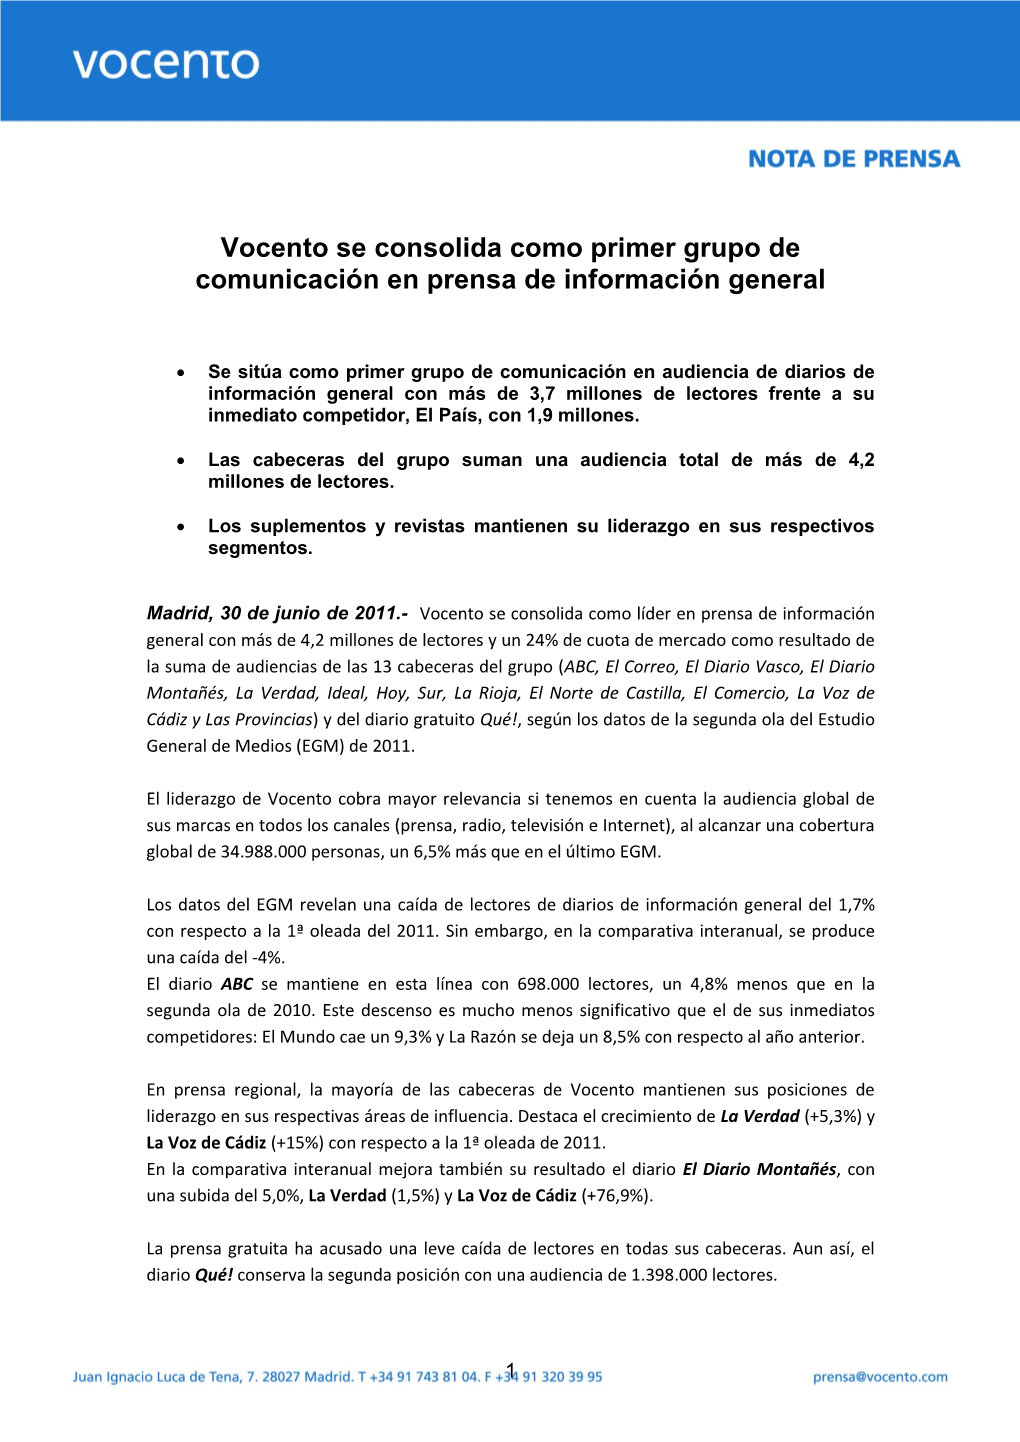 Vocento Se Consolida Como Primer Grupo De Comunicación En Prensa De Información General